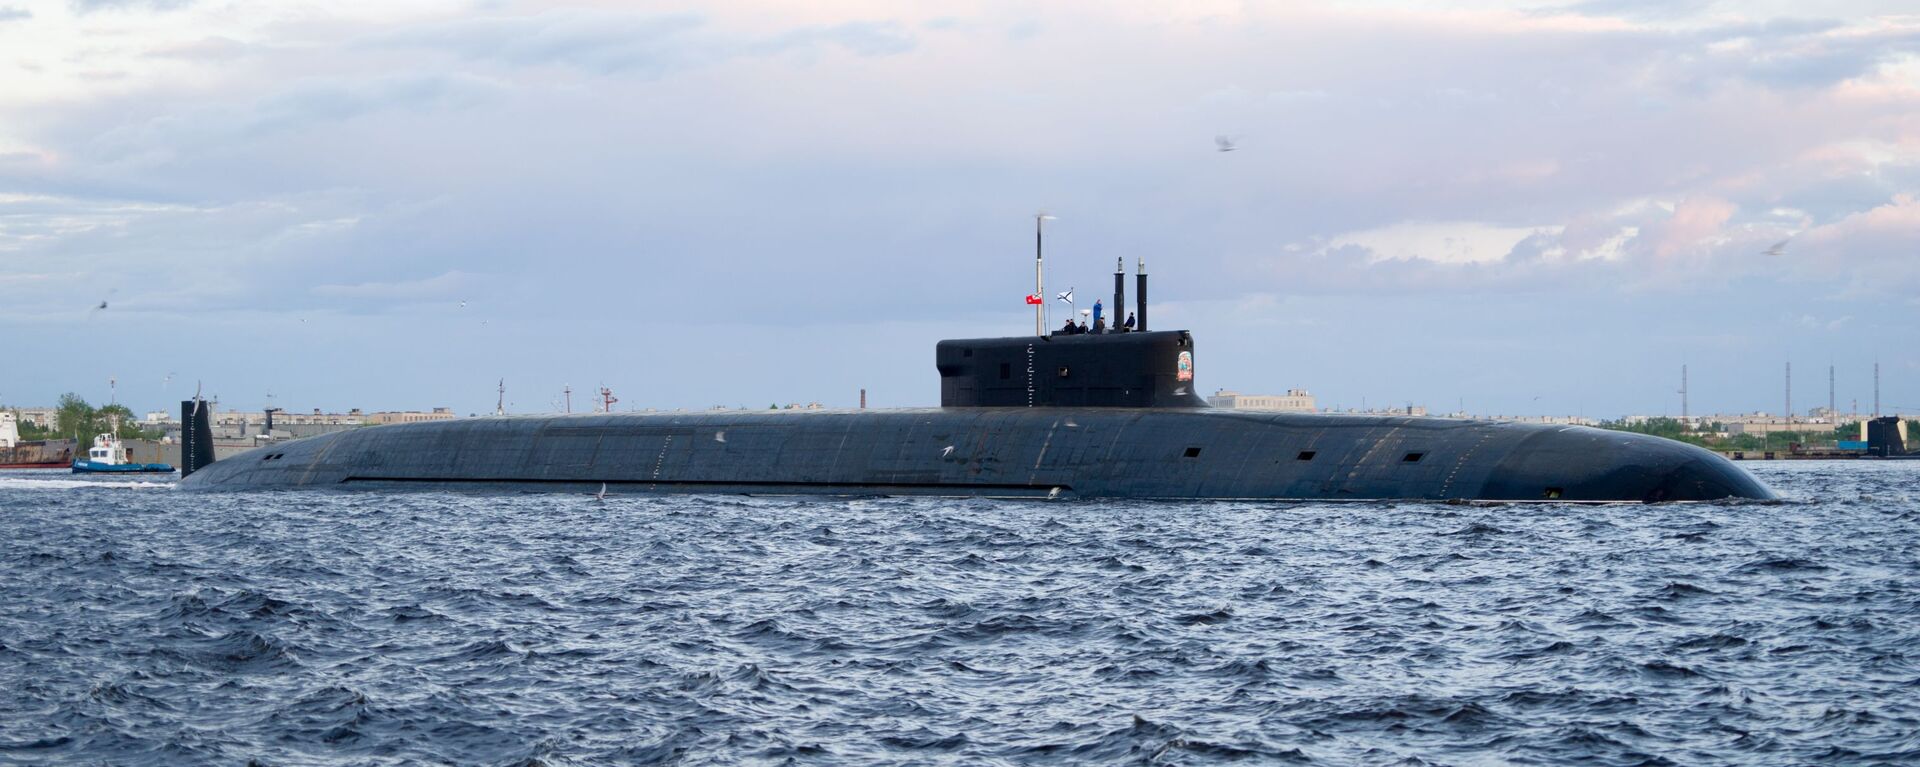 Подводный крейсер Князь Владимир - Sputnik Таджикистан, 1920, 28.03.2021